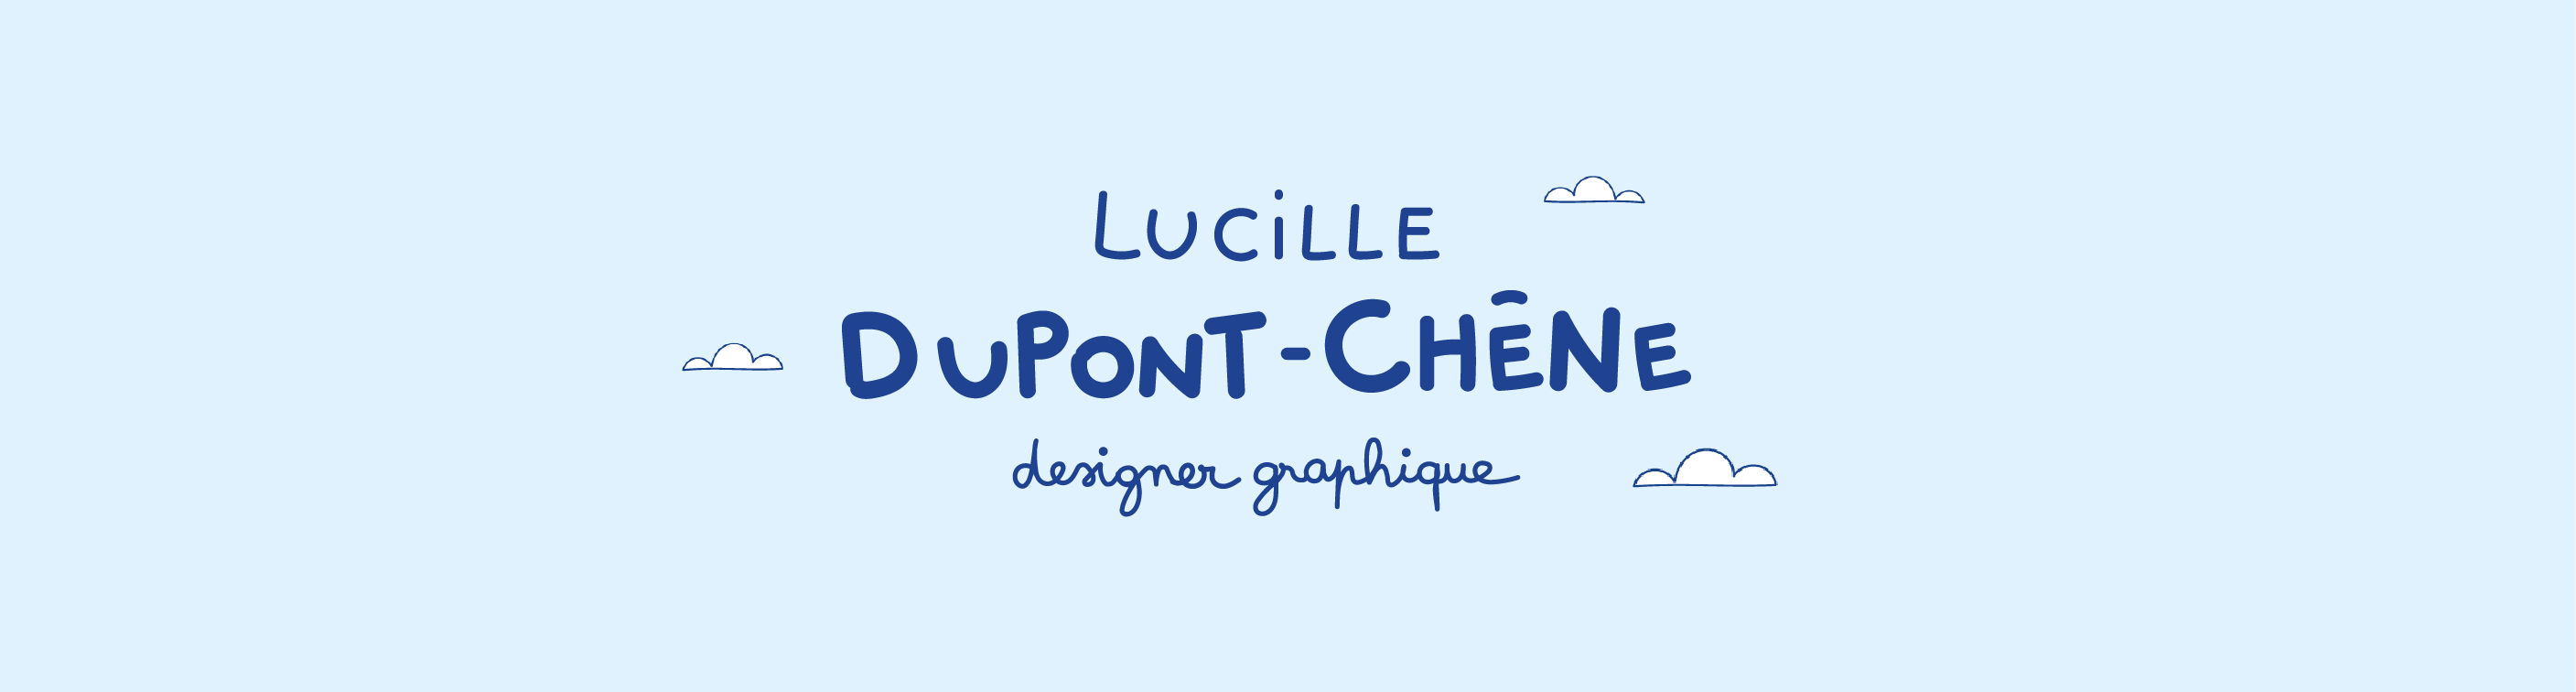 Lucille Dupont-Chêne, Designer graphique